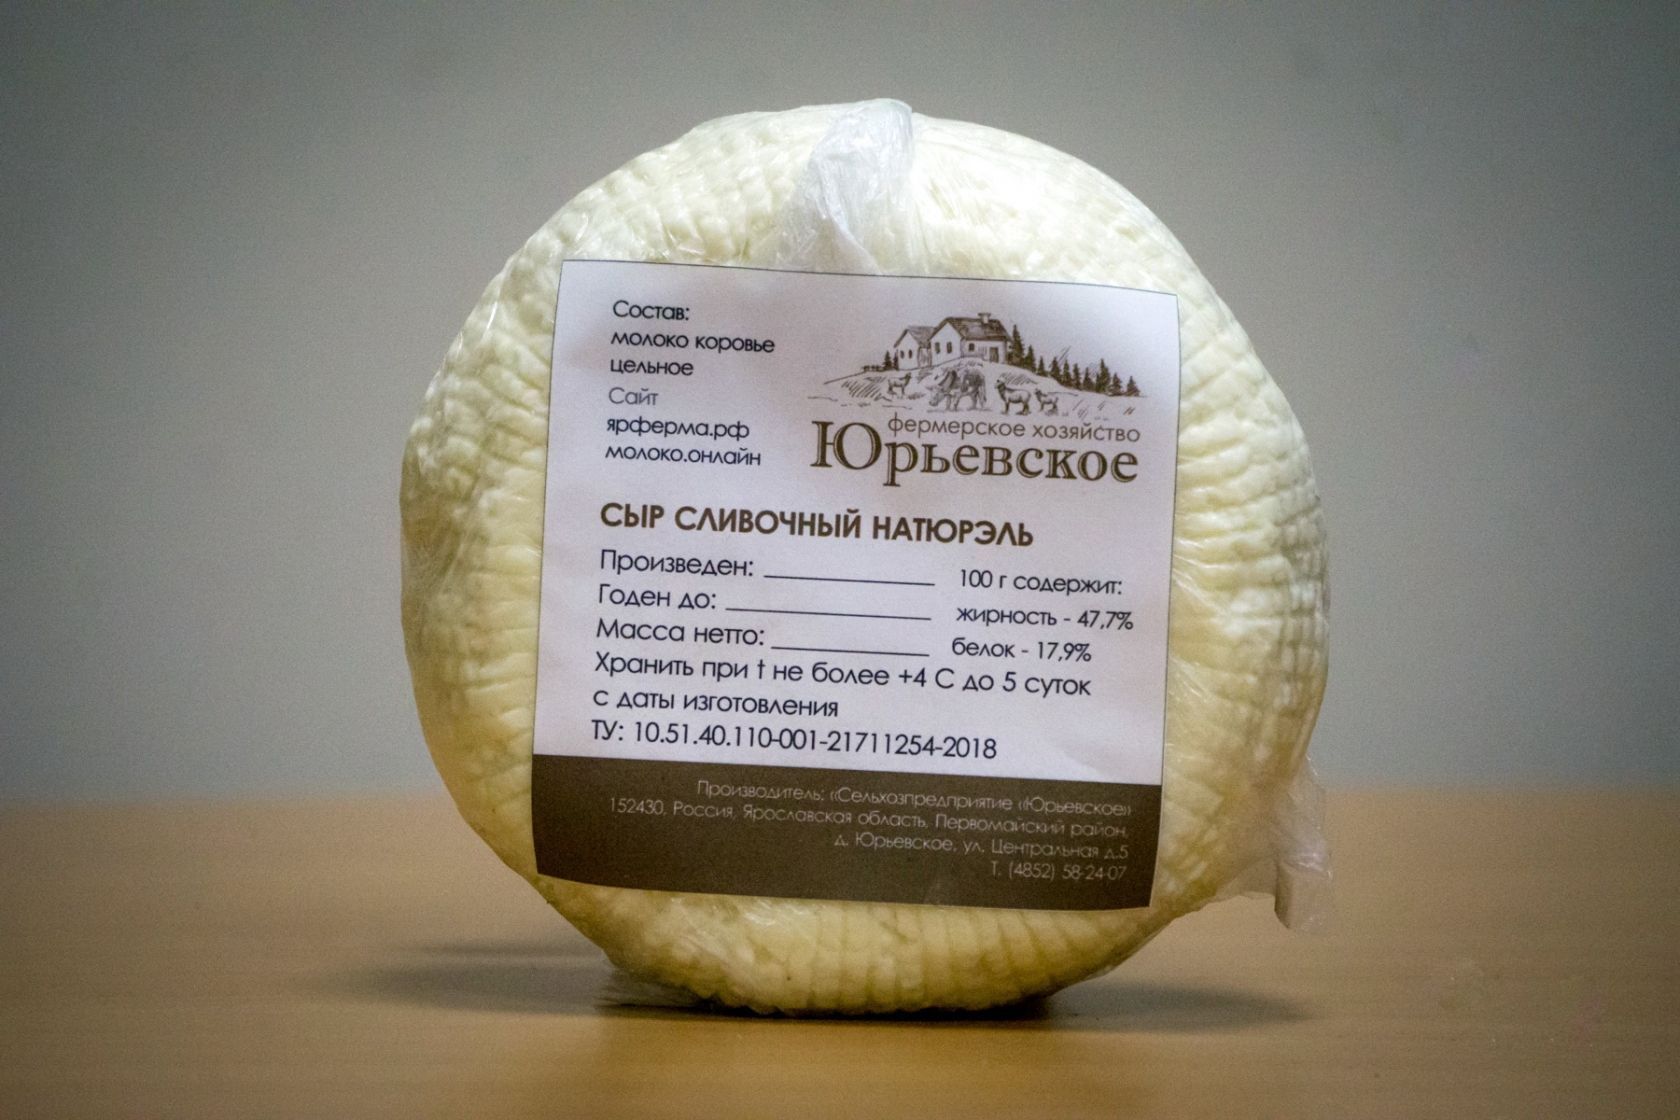 сыр сливочный натюрэль продукция фермерского хозяйства Юрьевское | yarferma.ru